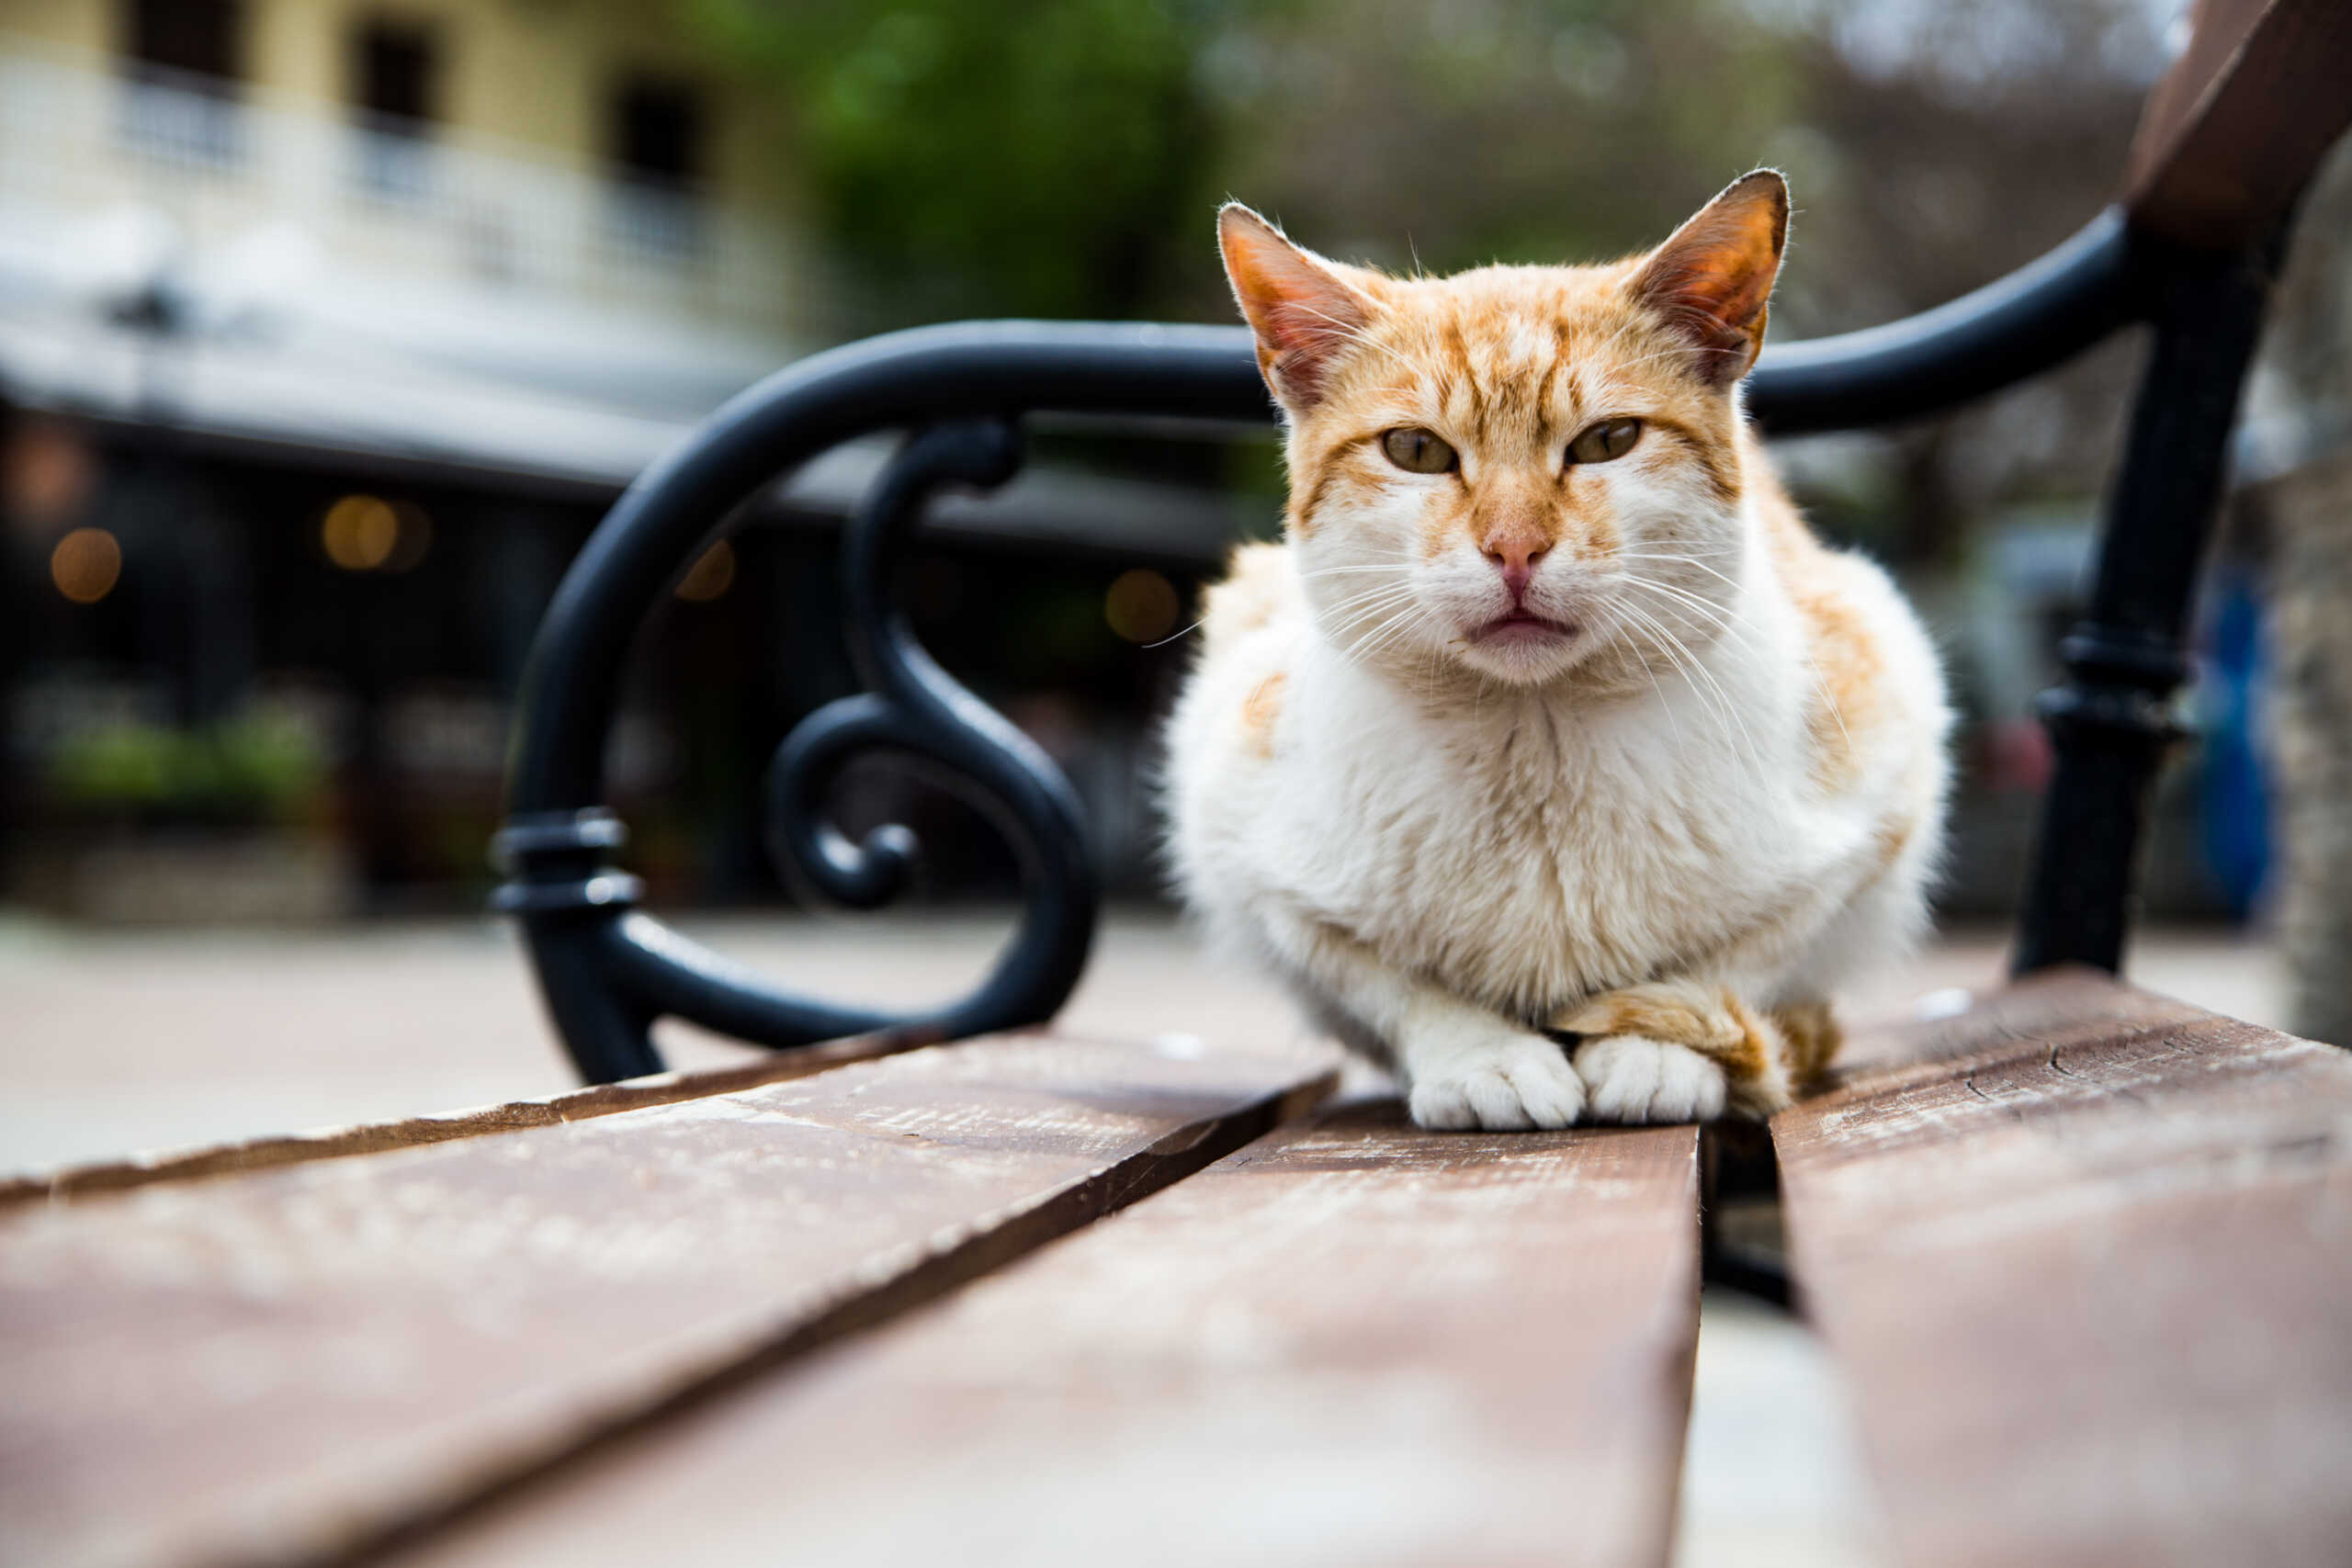 Βόλος: Έβαλε φάκες για ποντίκια στο σπίτι ενοικιαστή του και πιάστηκε η ουρά της γάτας του